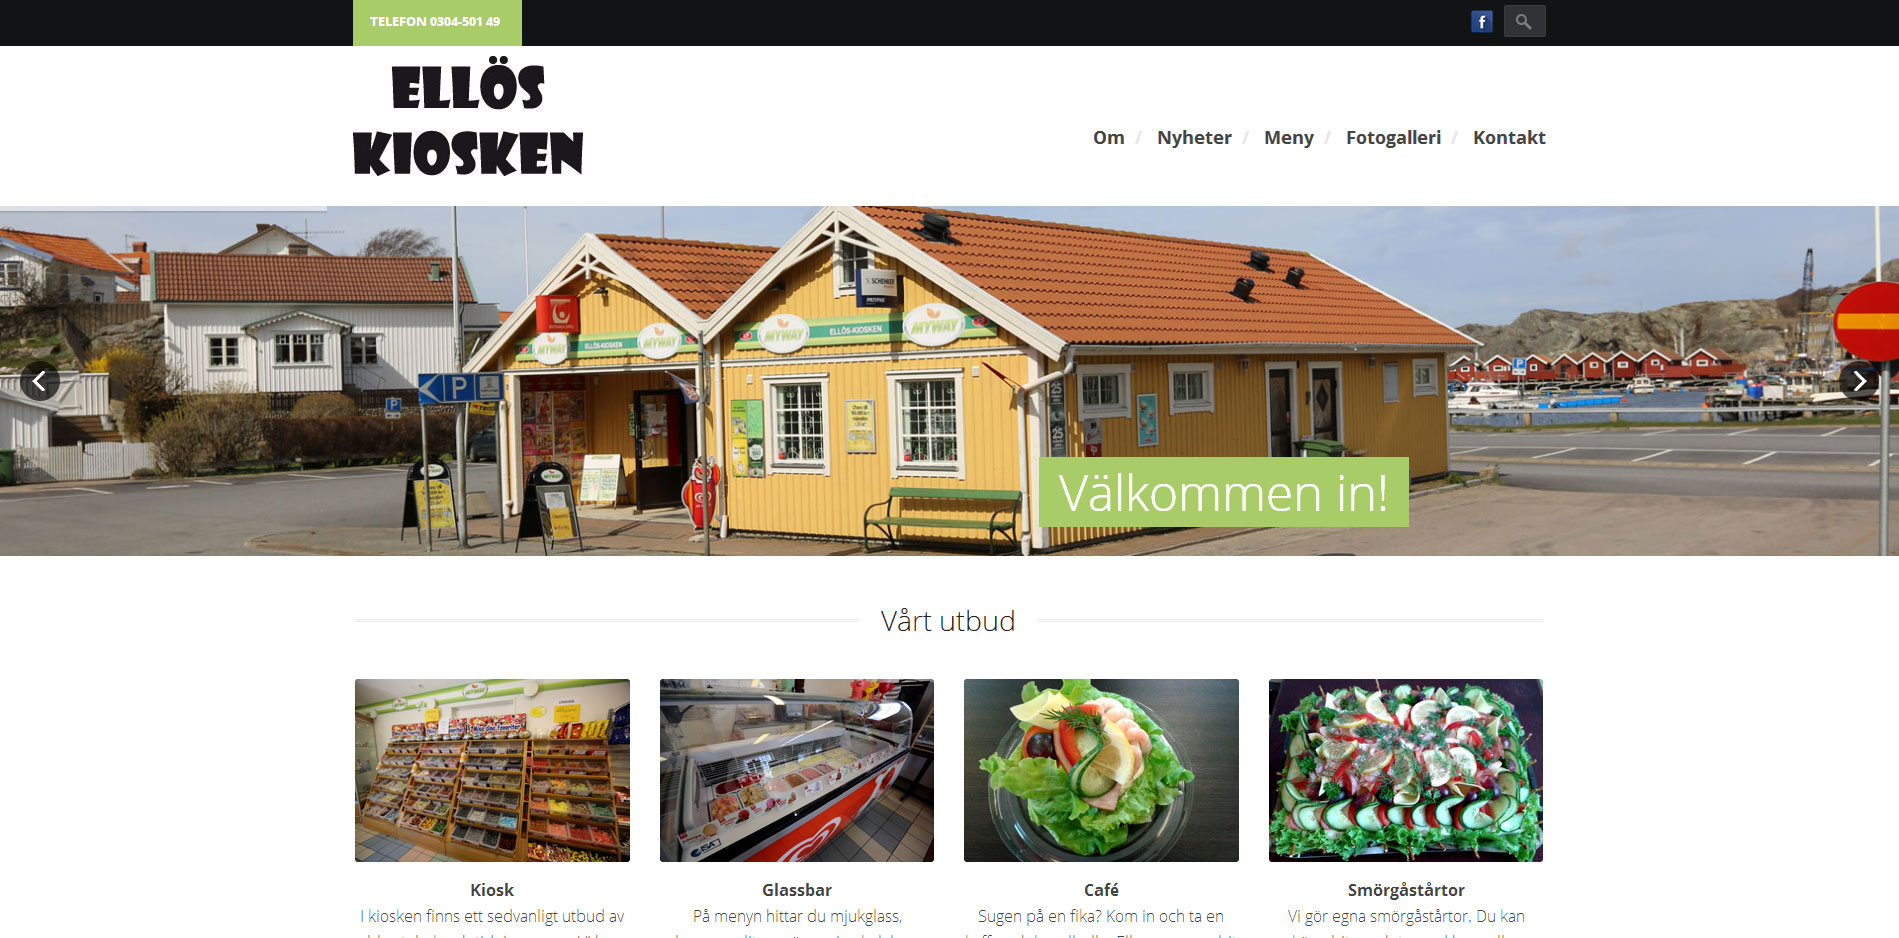 New website for Elloskiosken